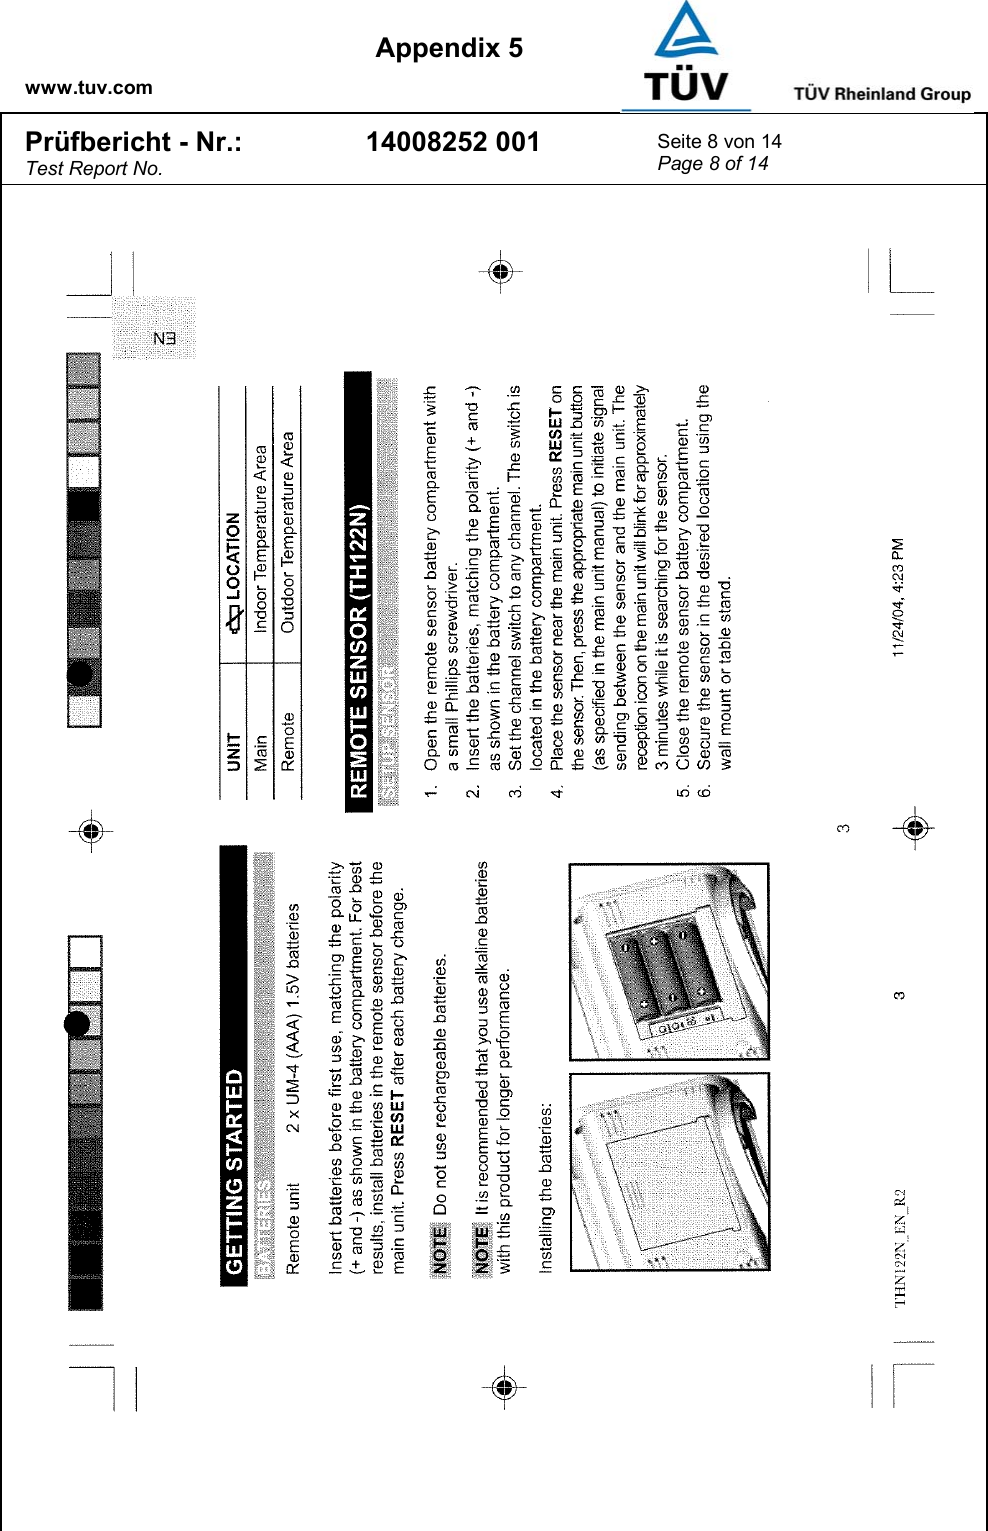    www.tuv.com  Appendix 5 Prüfbericht - Nr.: Test Report No. 14008252 001  Seite 8 von 14 Page 8 of 14   